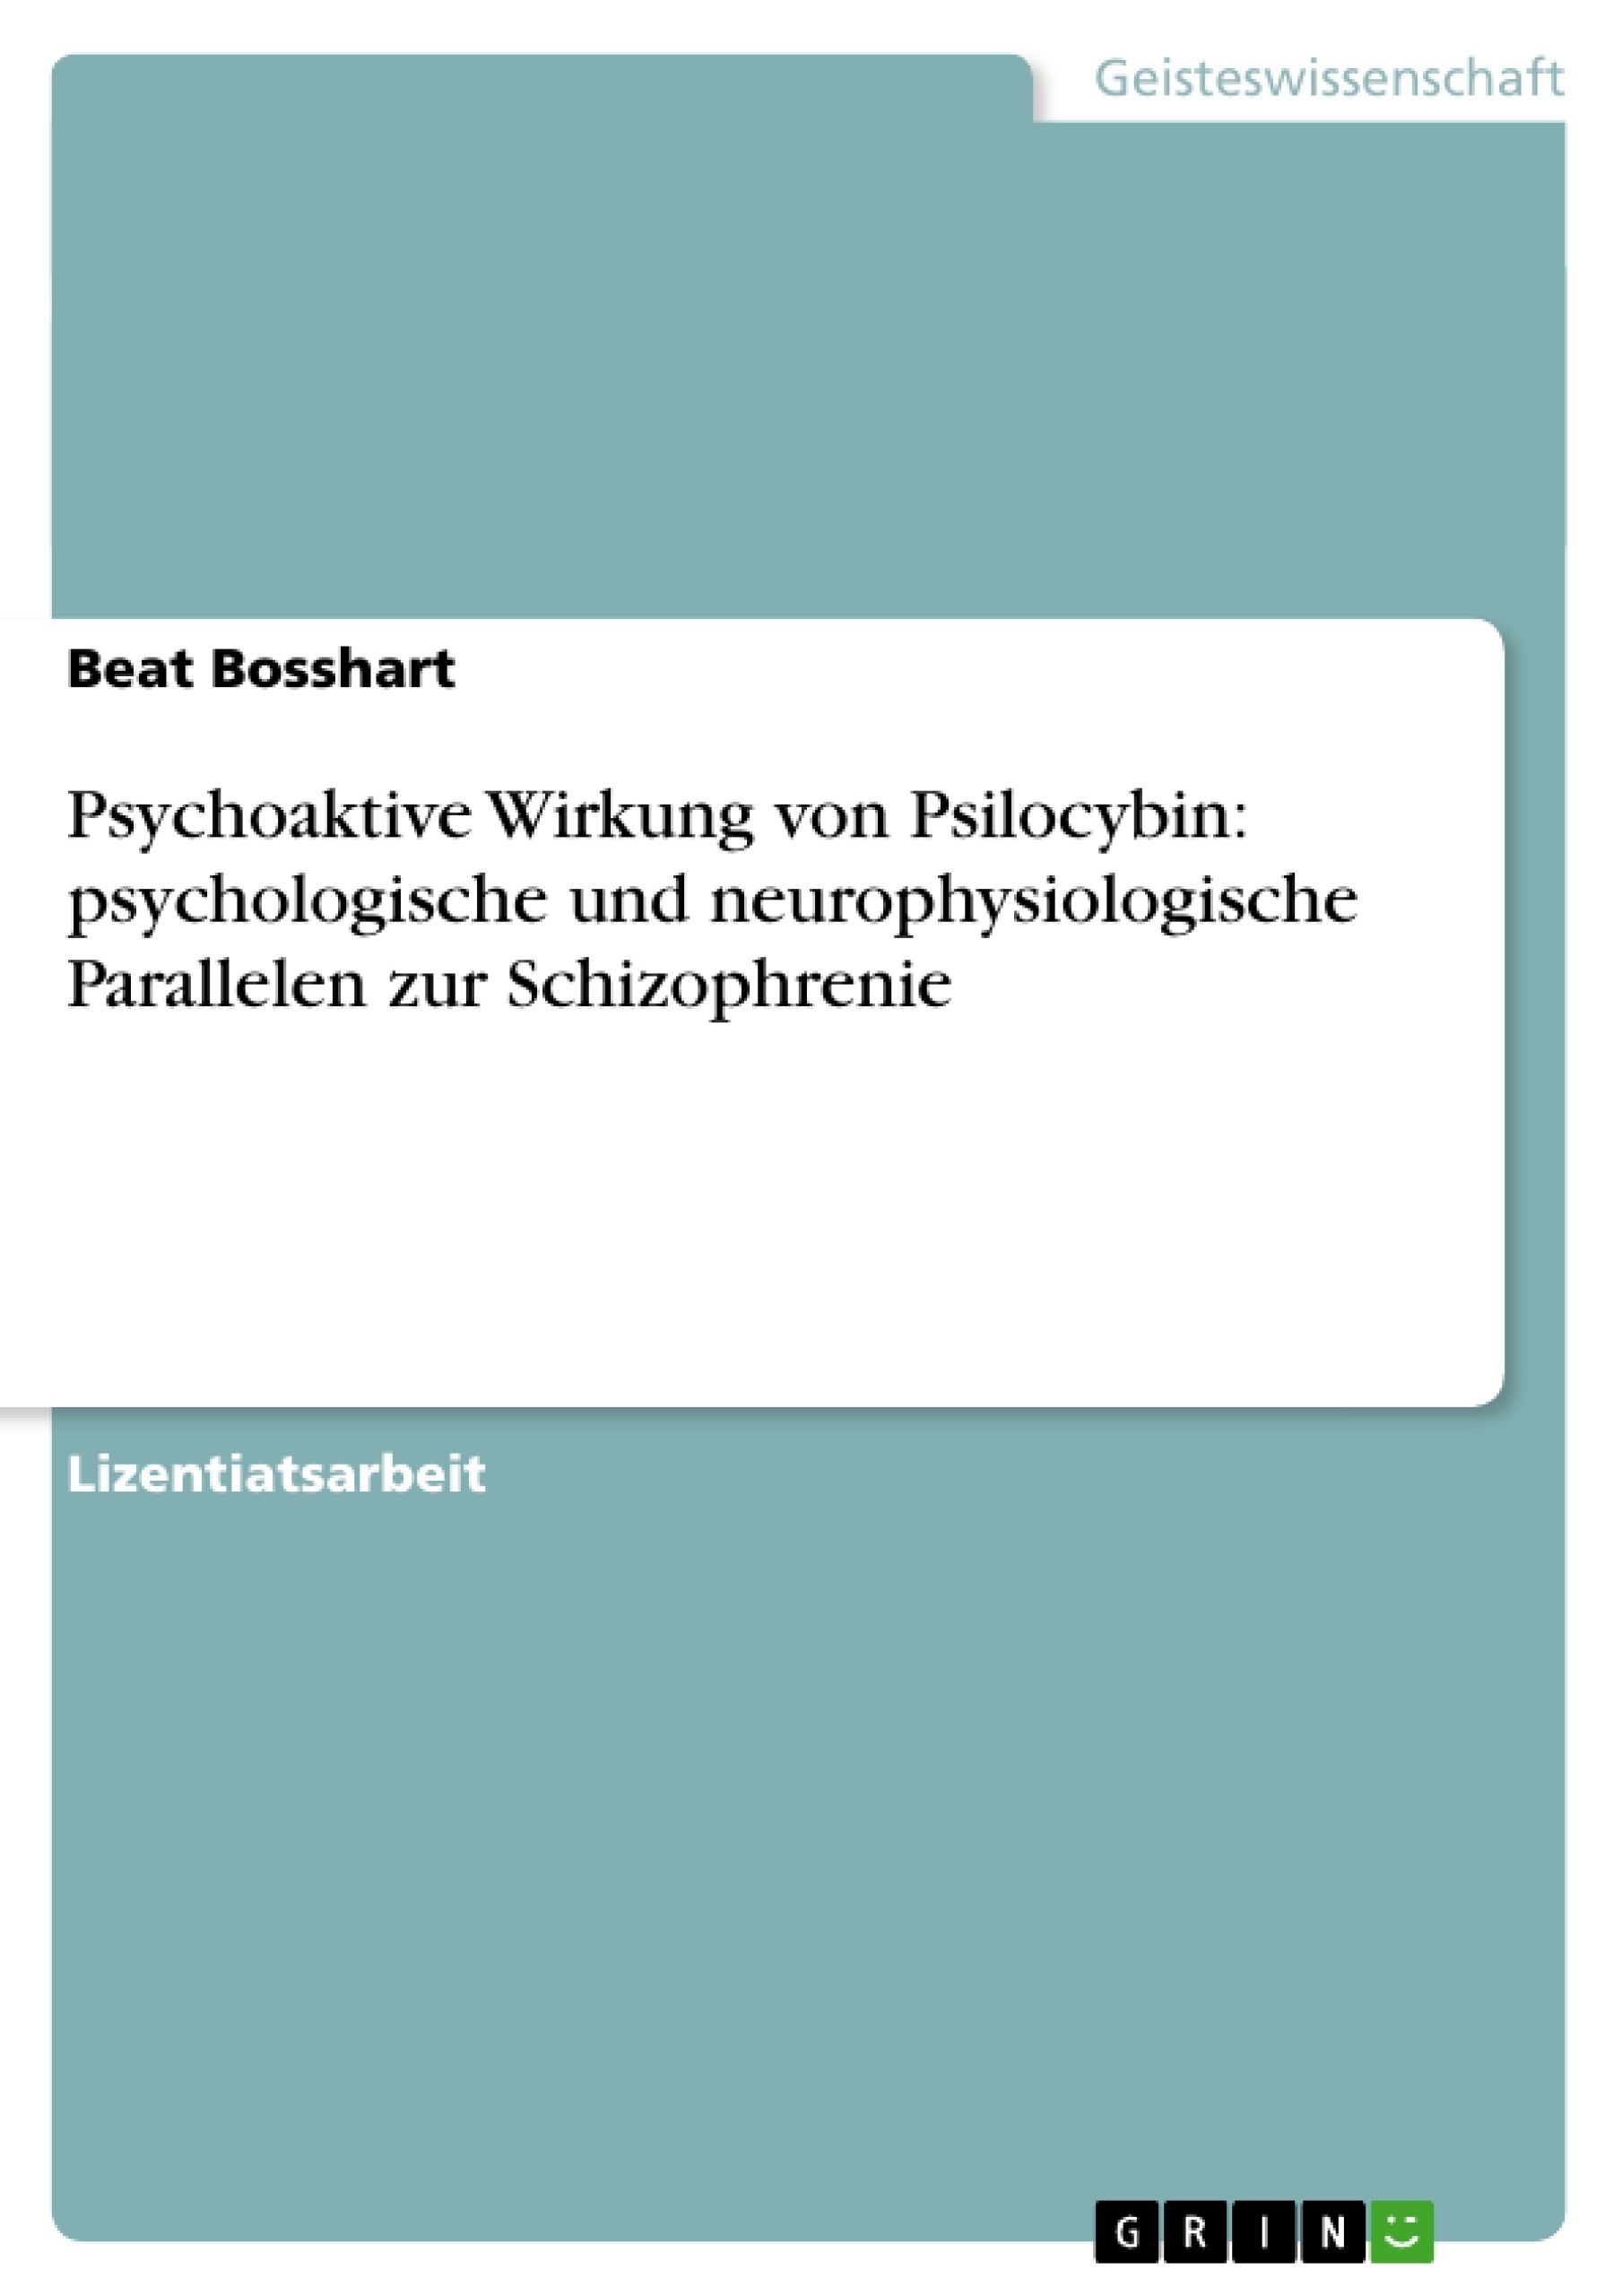 Title: Psychoaktive Wirkung von Psilocybin: psychologische und neurophysiologische Parallelen zur Schizophrenie